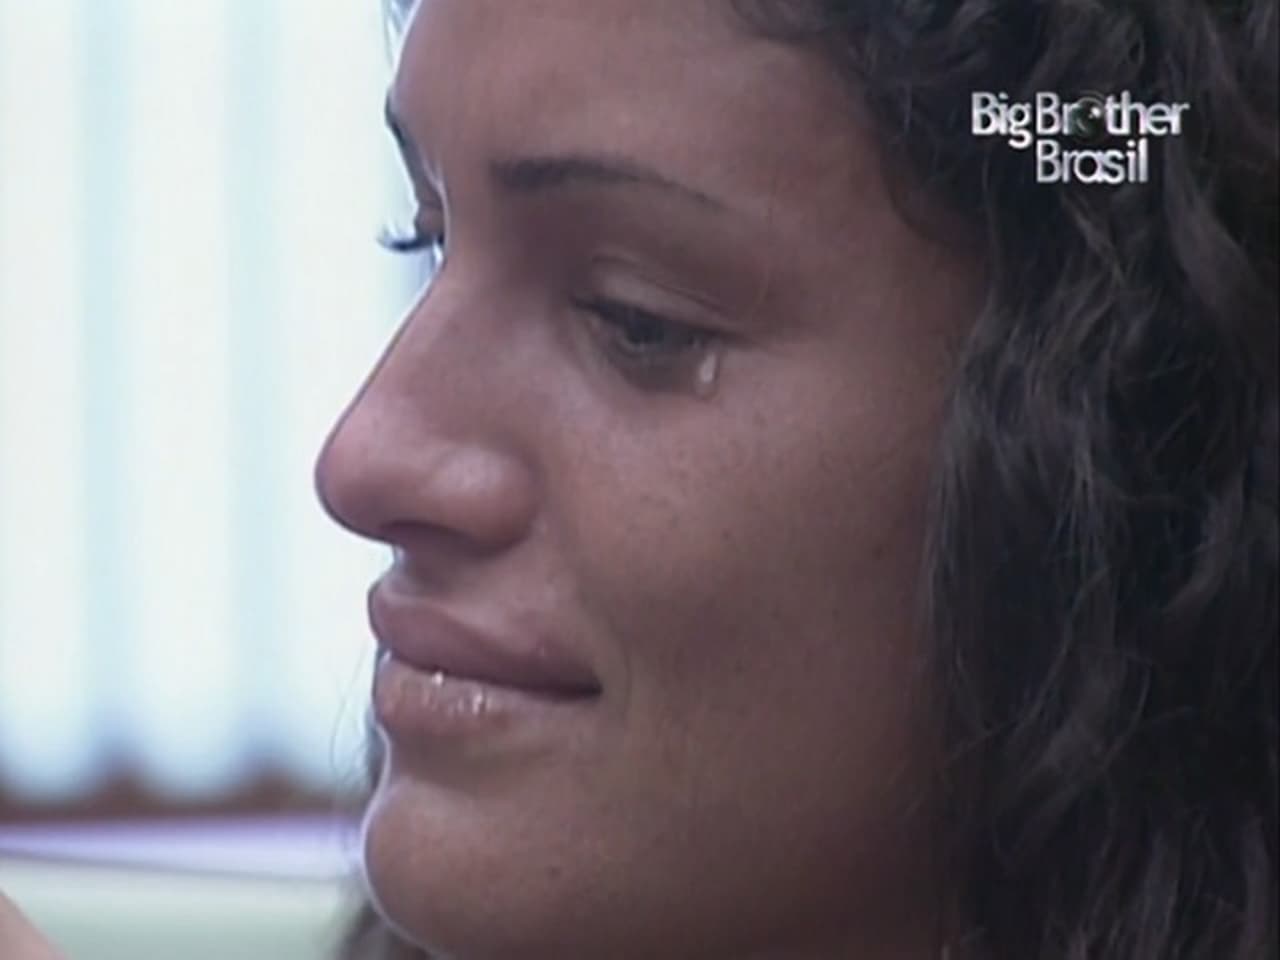 Big Brother Brasil - Season 4 Episode 7 : Episode 7